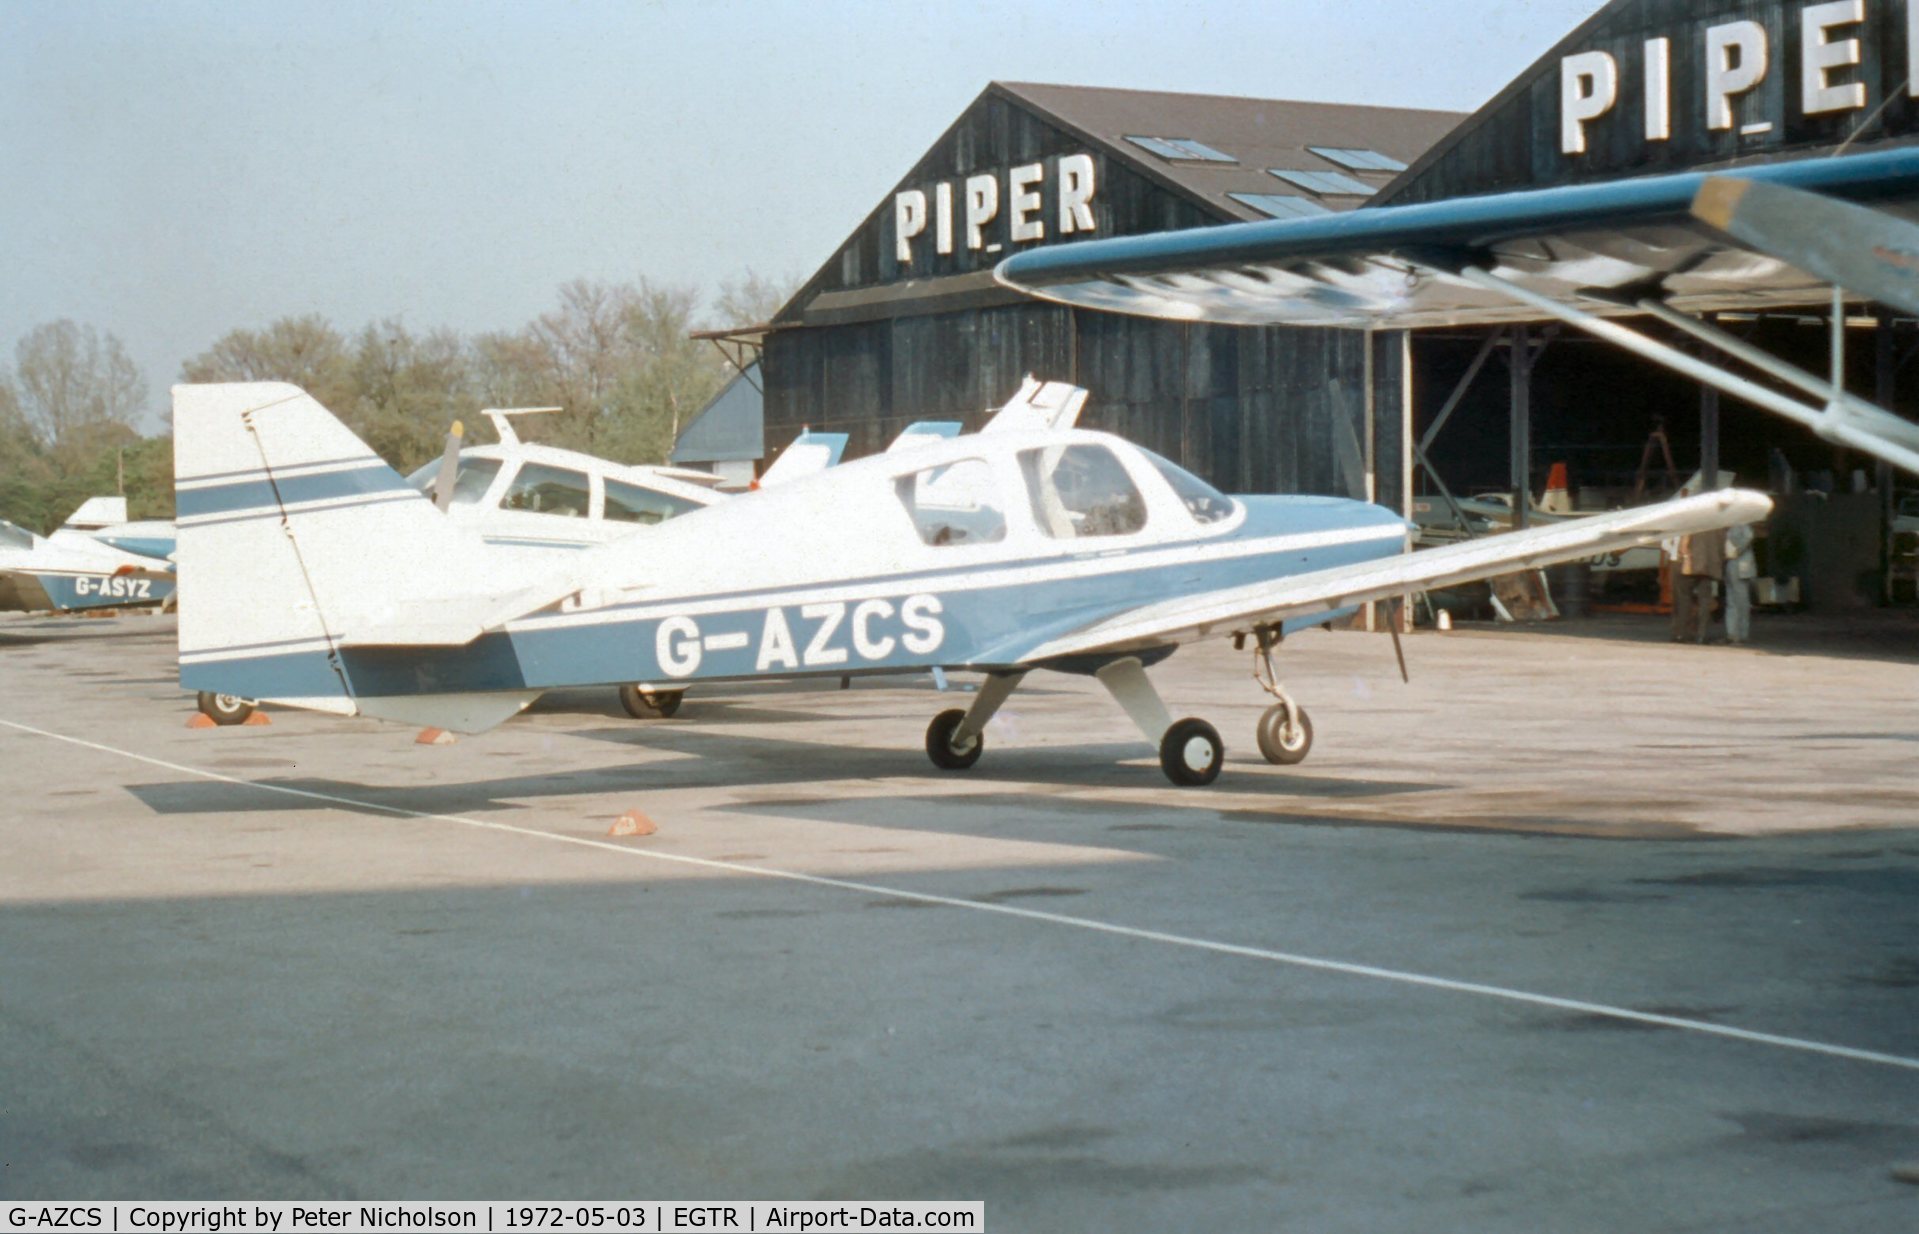 G-AZCS, 1970 Beagle B-121 Pup Series 1 (Pup 100) C/N B121-160, Beagle 121 seen at Elstree in May 1972.